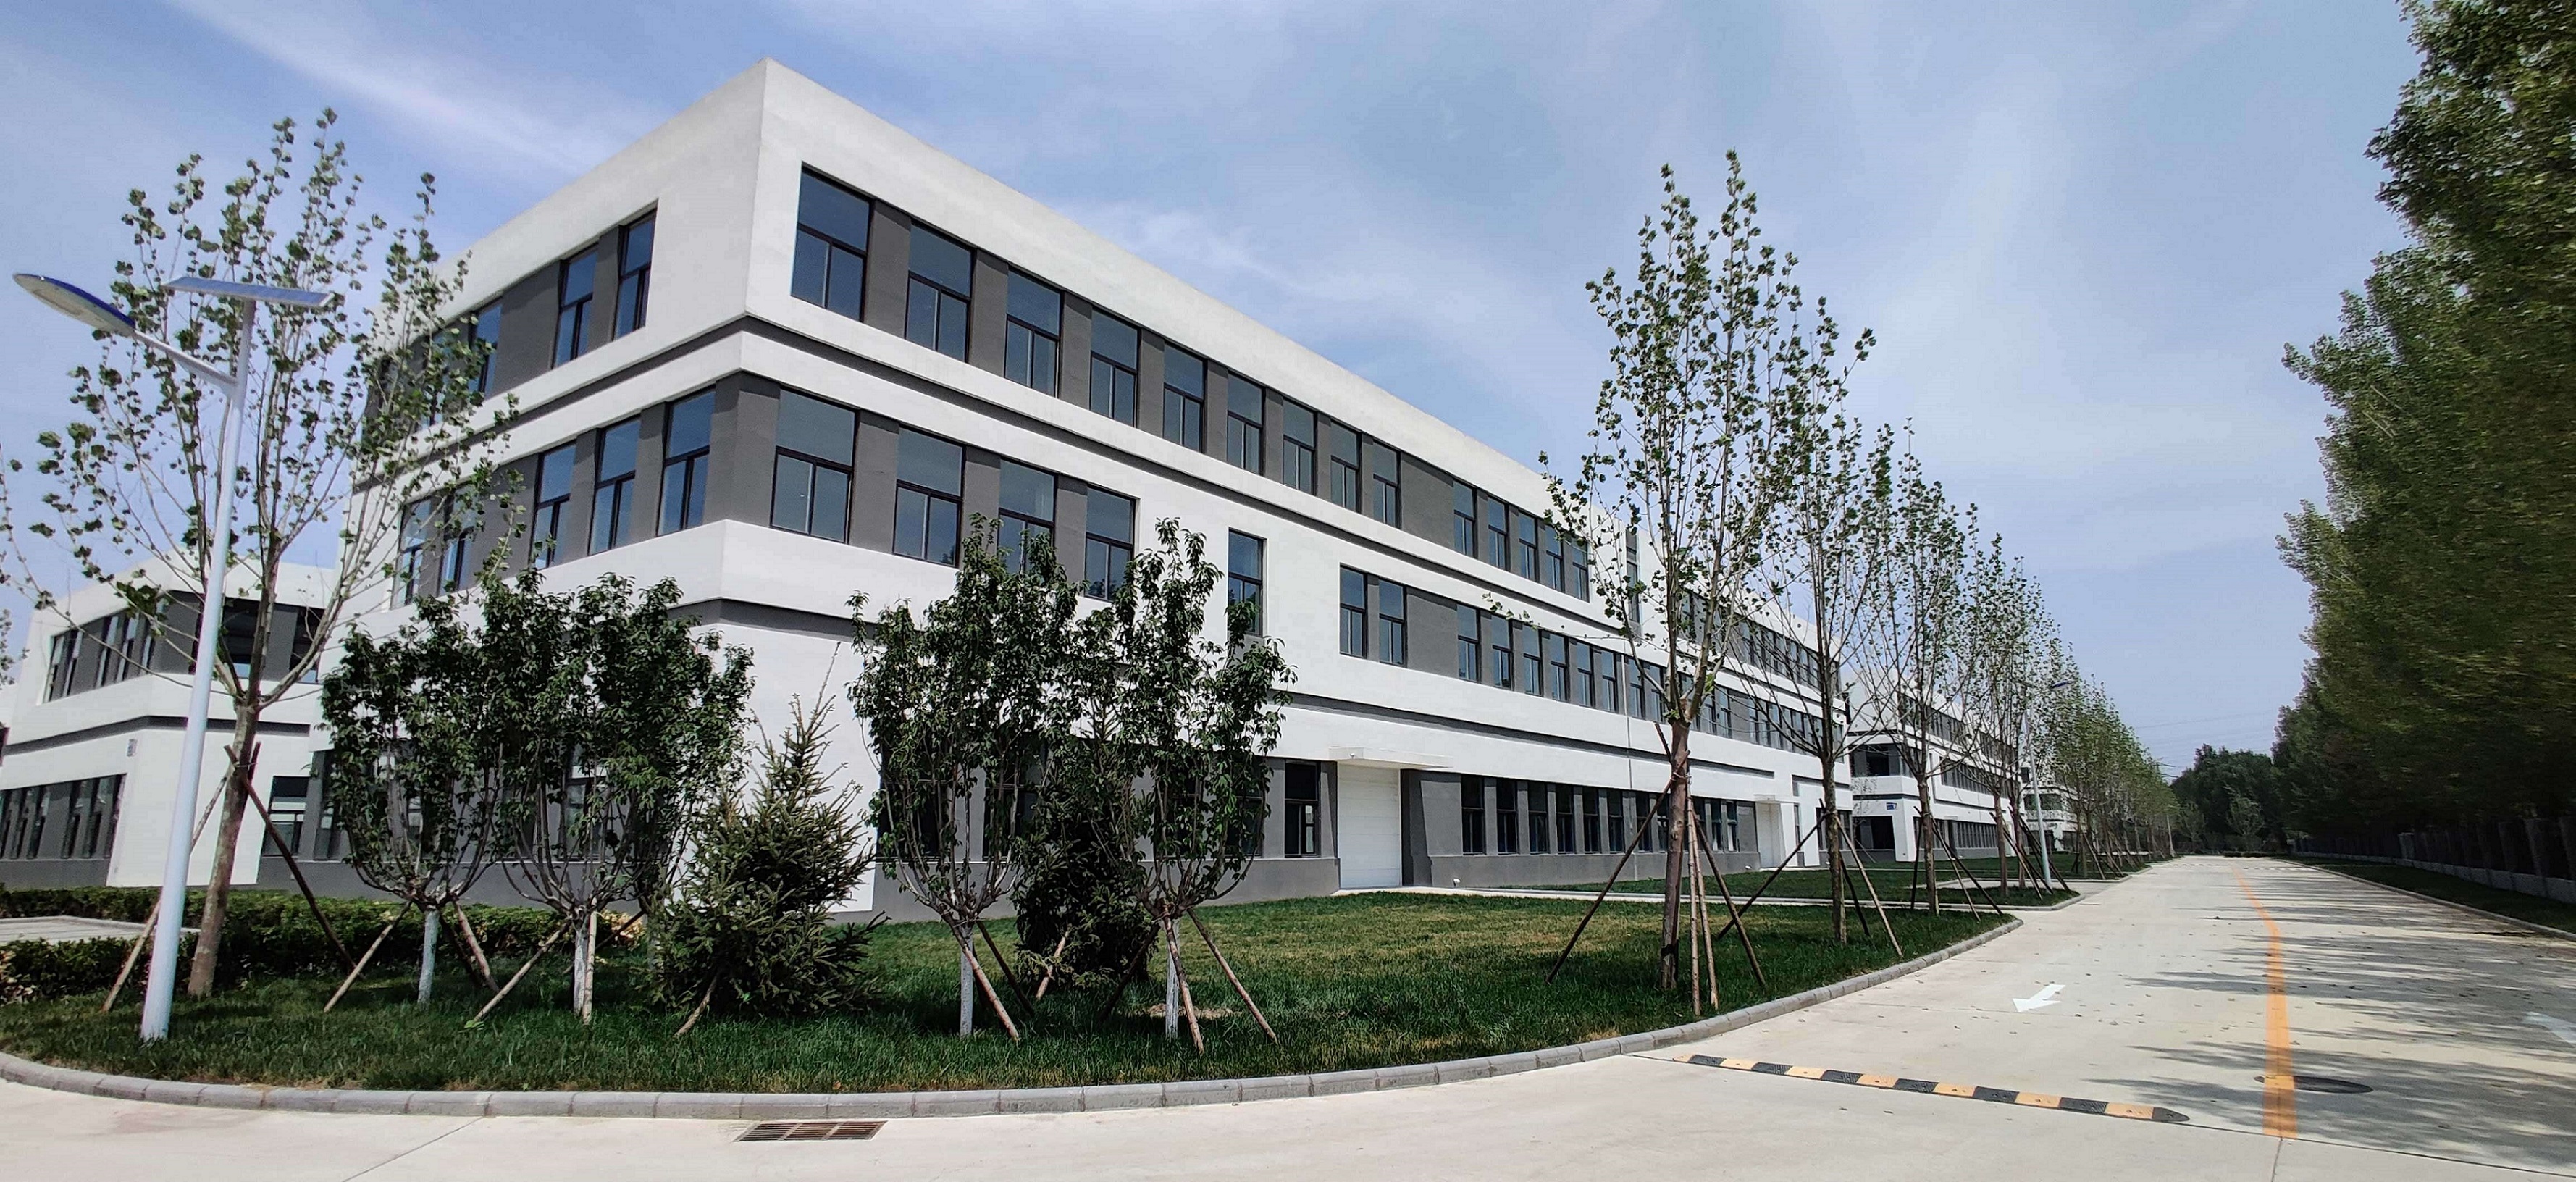 上海生物科技公司上海闵行区厂房|办公室装修工程